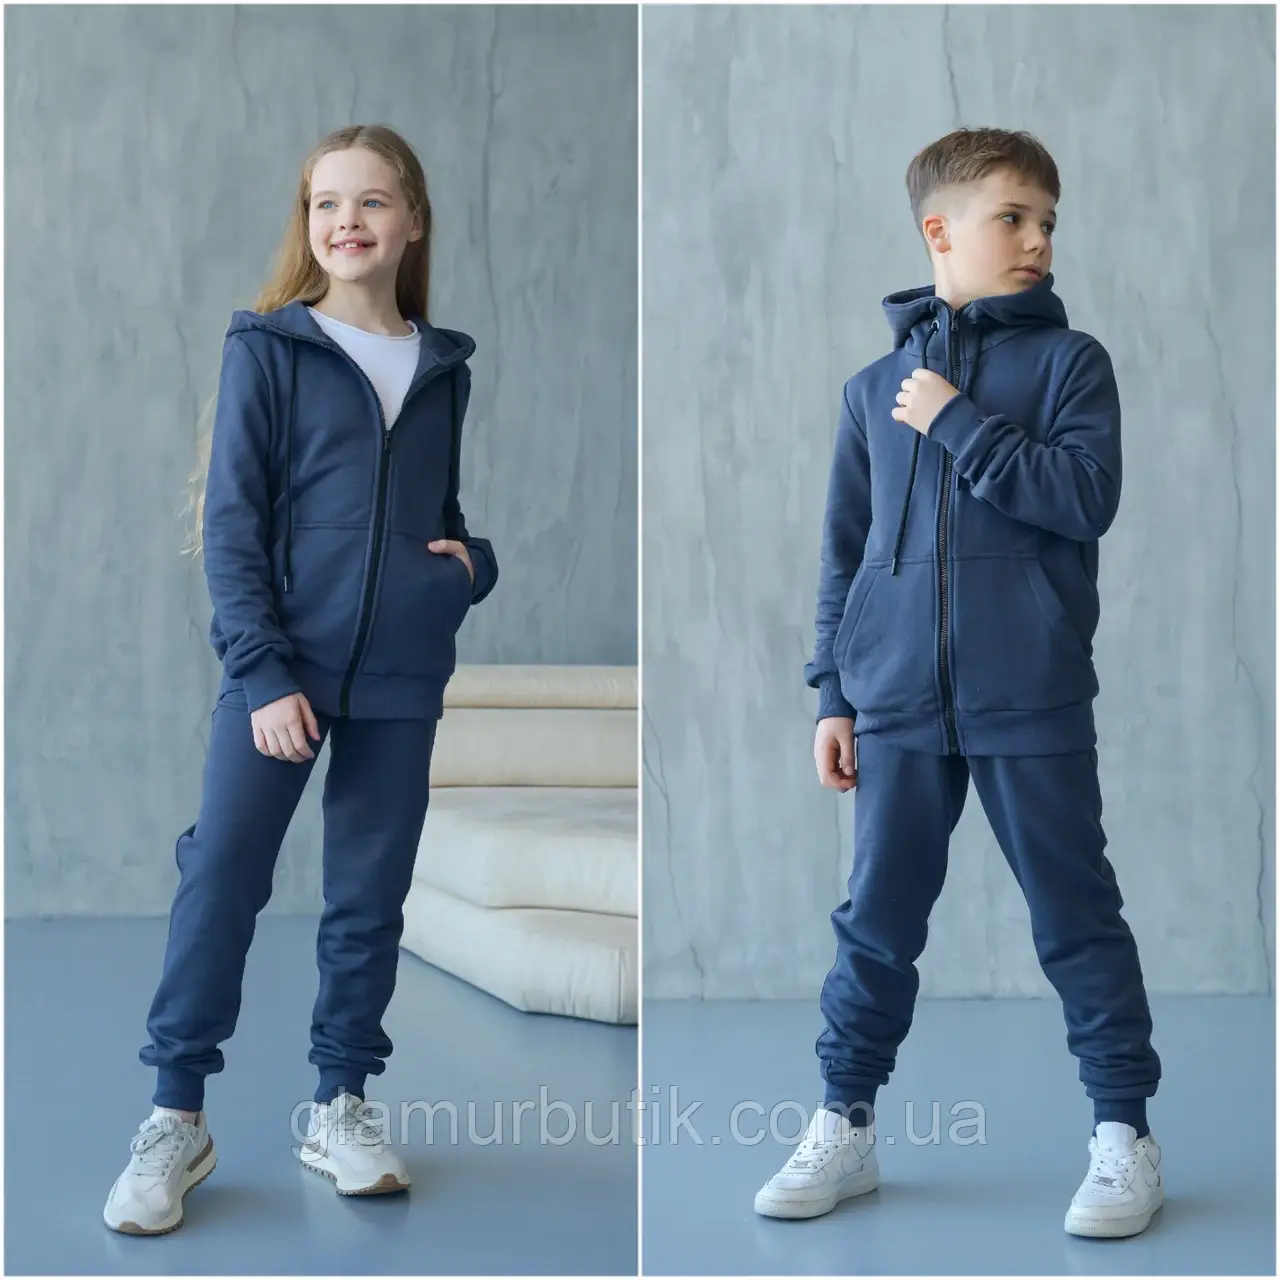 Дитячий спортивний костюм для хлопчика та дівчинки Unisex графіт зріст від 74/80-152/158